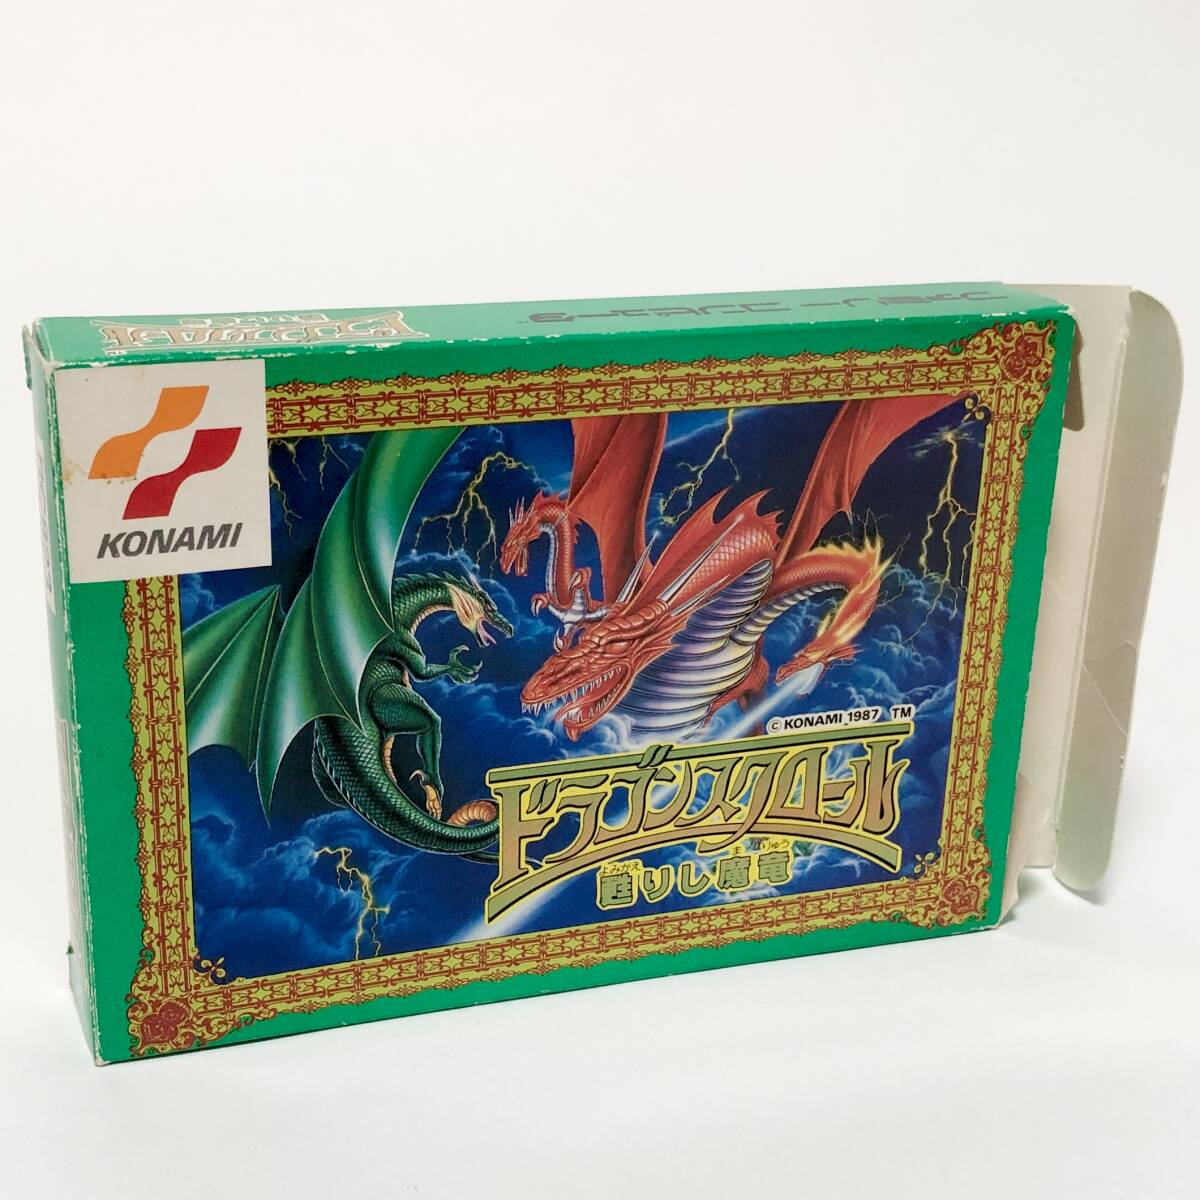 ファミコン ドラゴンスクロール 甦りし魔竜 箱説付き カード付き 痛みあり コナミ Nintendo Famicom Dragon Scroll CIB Tested Konami_画像2